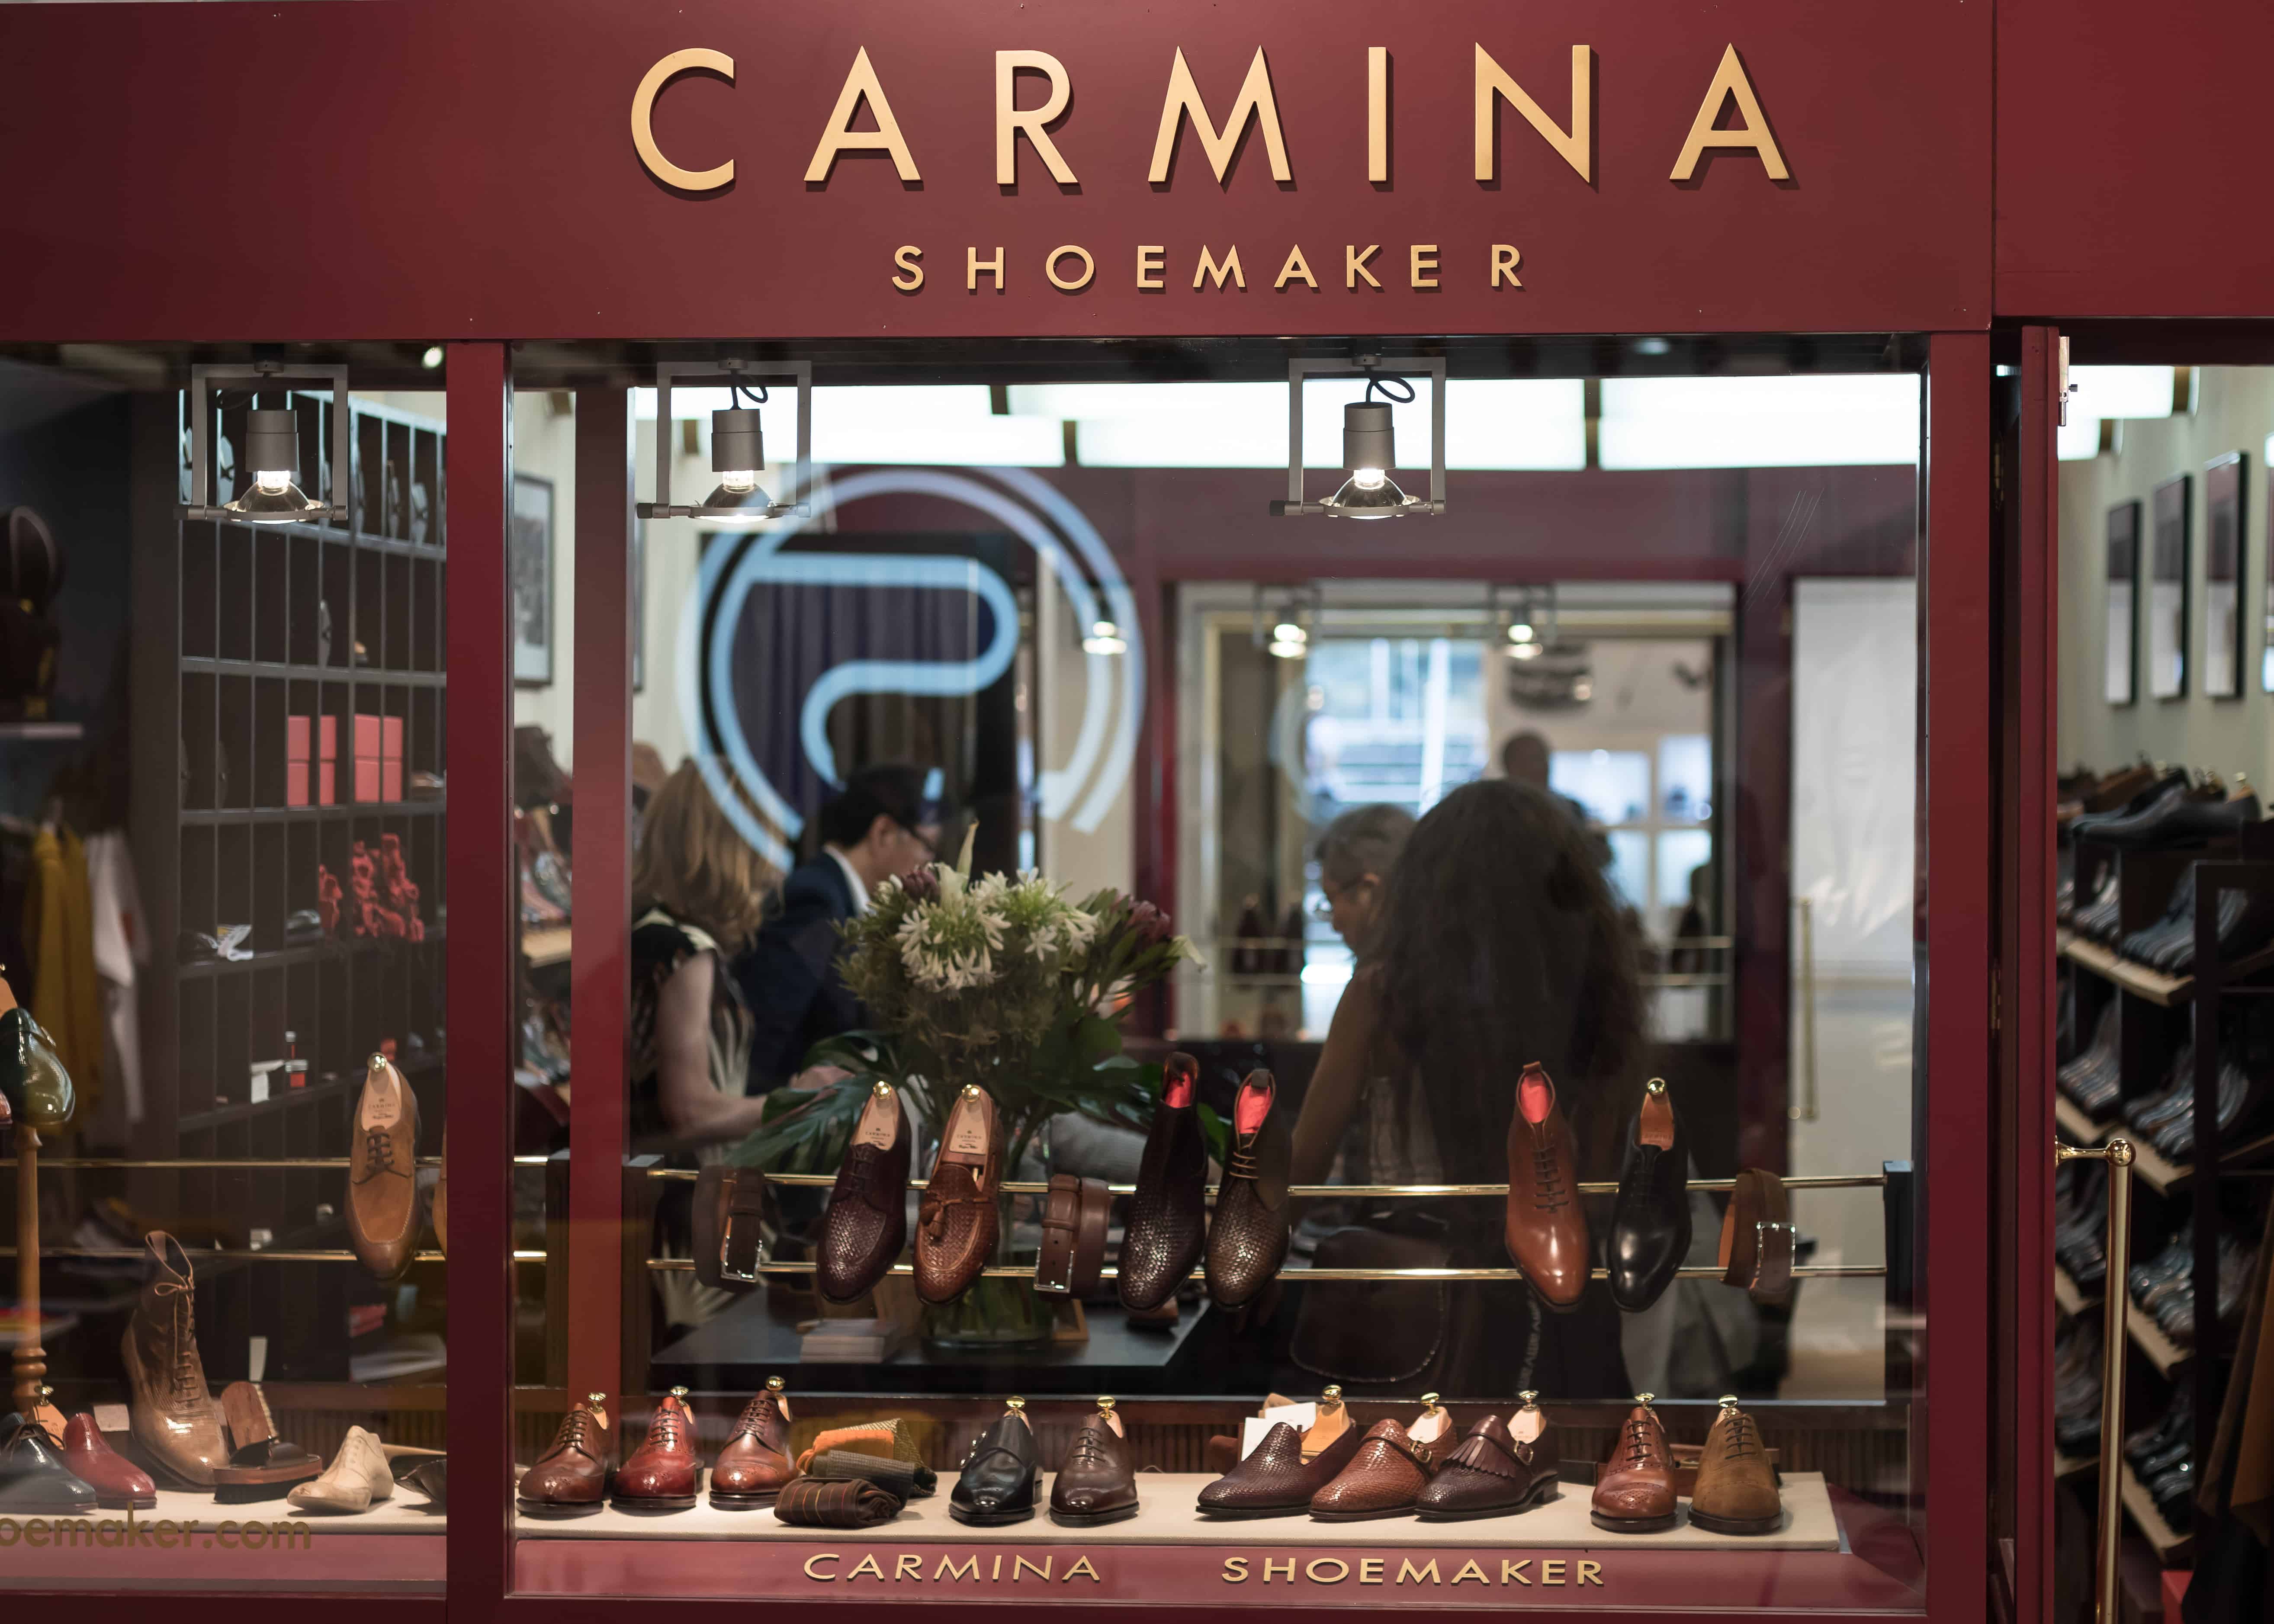 Carmina: Hãy tham gia cùng chúng tôi vào một chuyến phiêu lưu đầy màu sắc với Carmina. Những chiếc dép thanh lịch và đầy phong cách của hãng này sẽ là điểm nhấn trong hình ảnh này. Hãy để cho Carmina giúp bạn làm mới phong cách của mình với những mẫu dép đẹp và đa dạng.